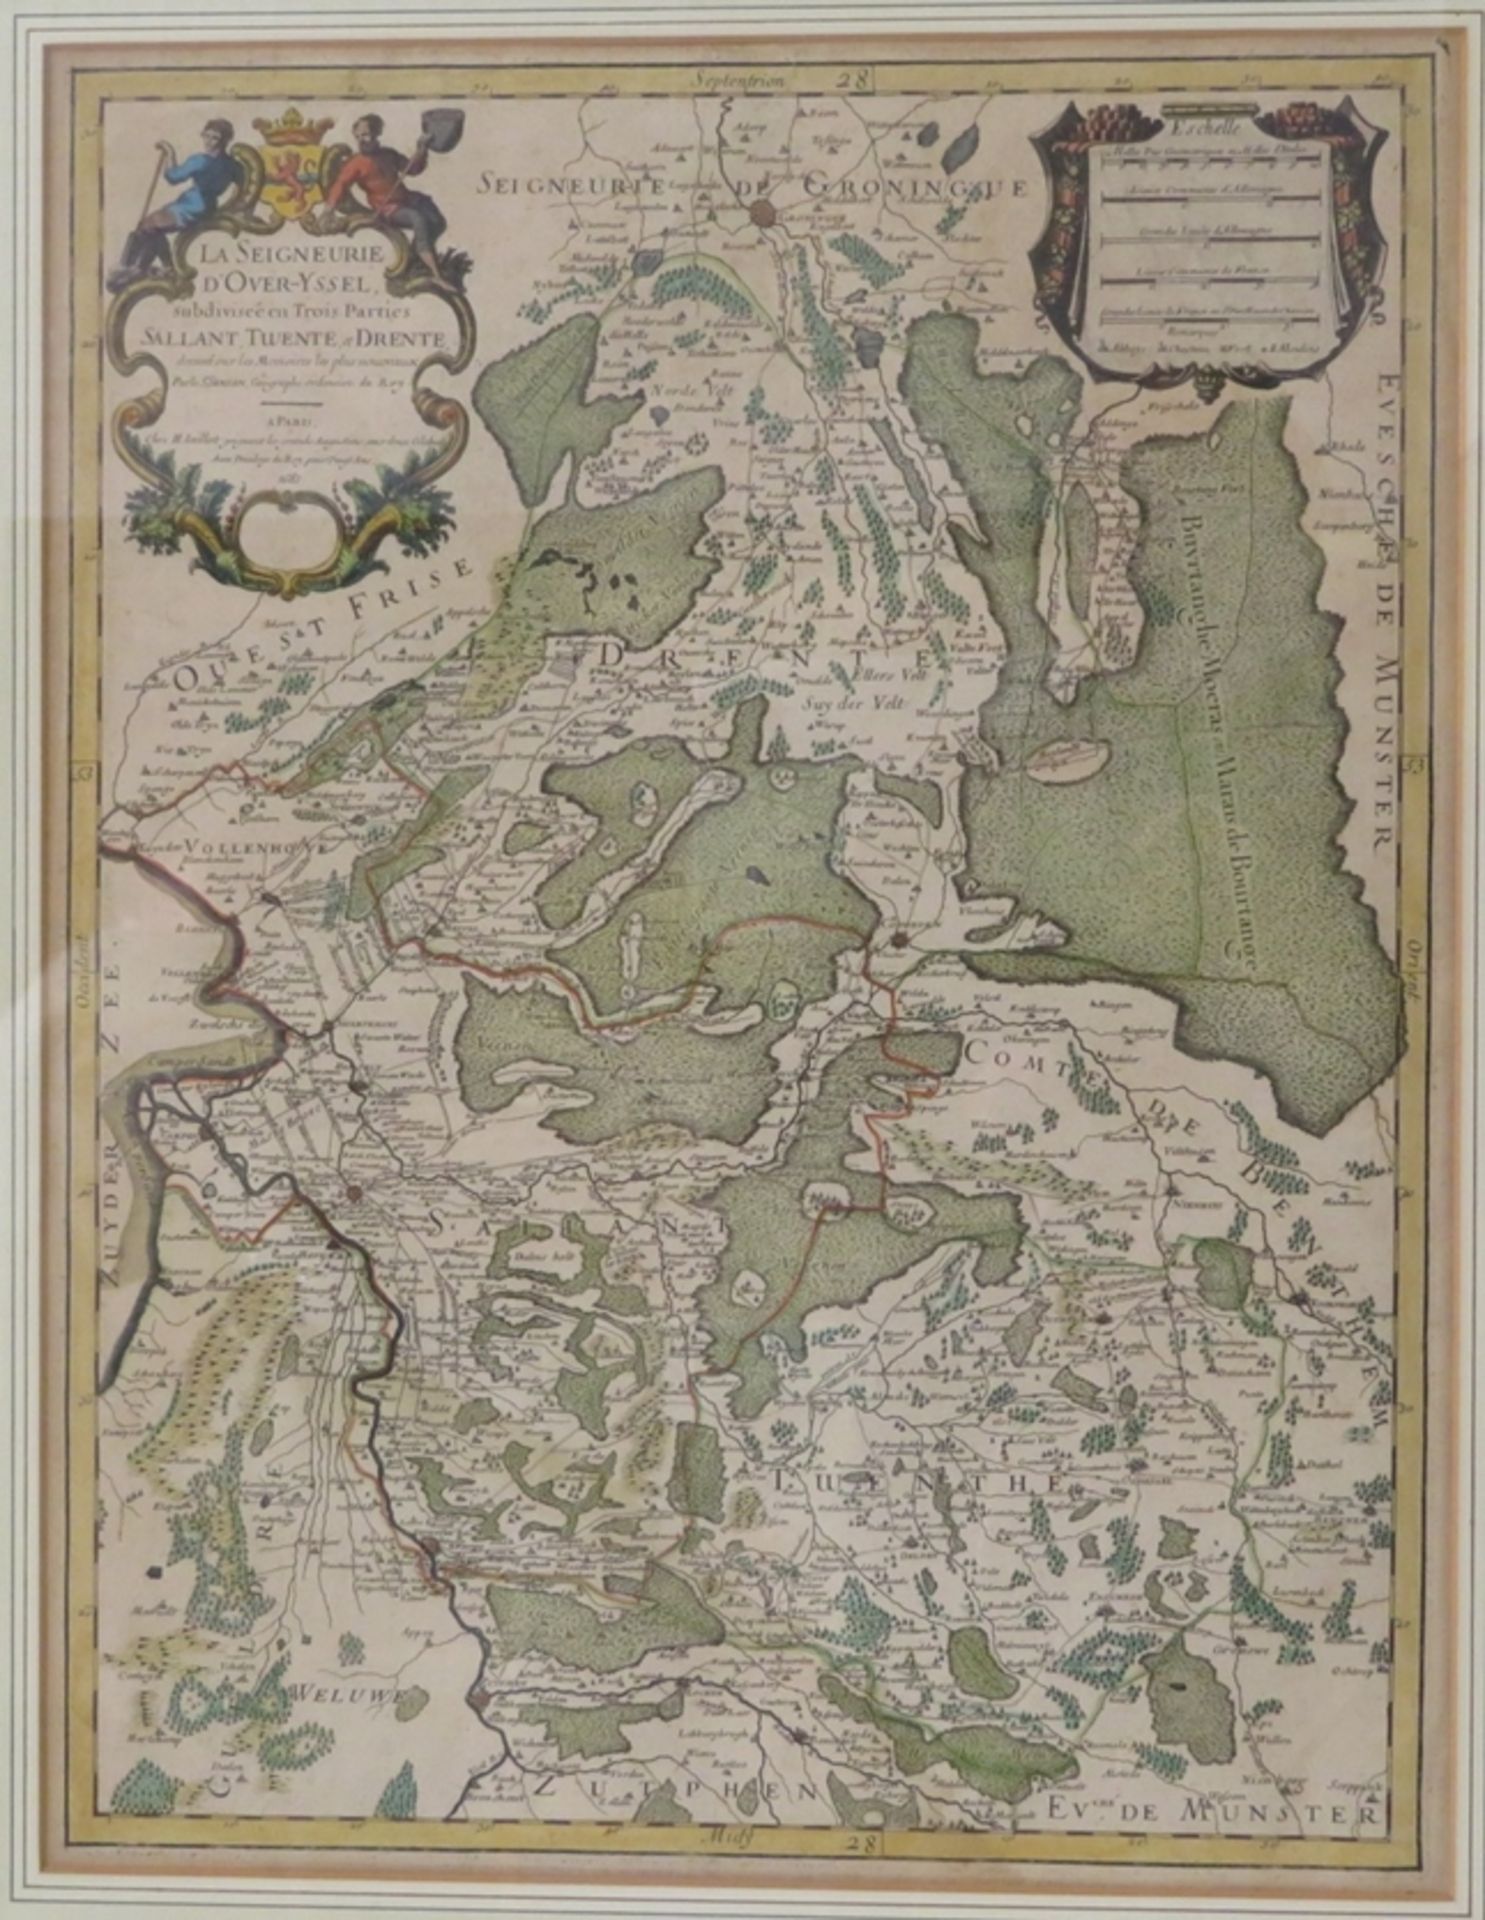 Sanson, S./Iaillot, Kupferstichlandkarte, "Niederlande/Trente", 1681, Alexis Hu